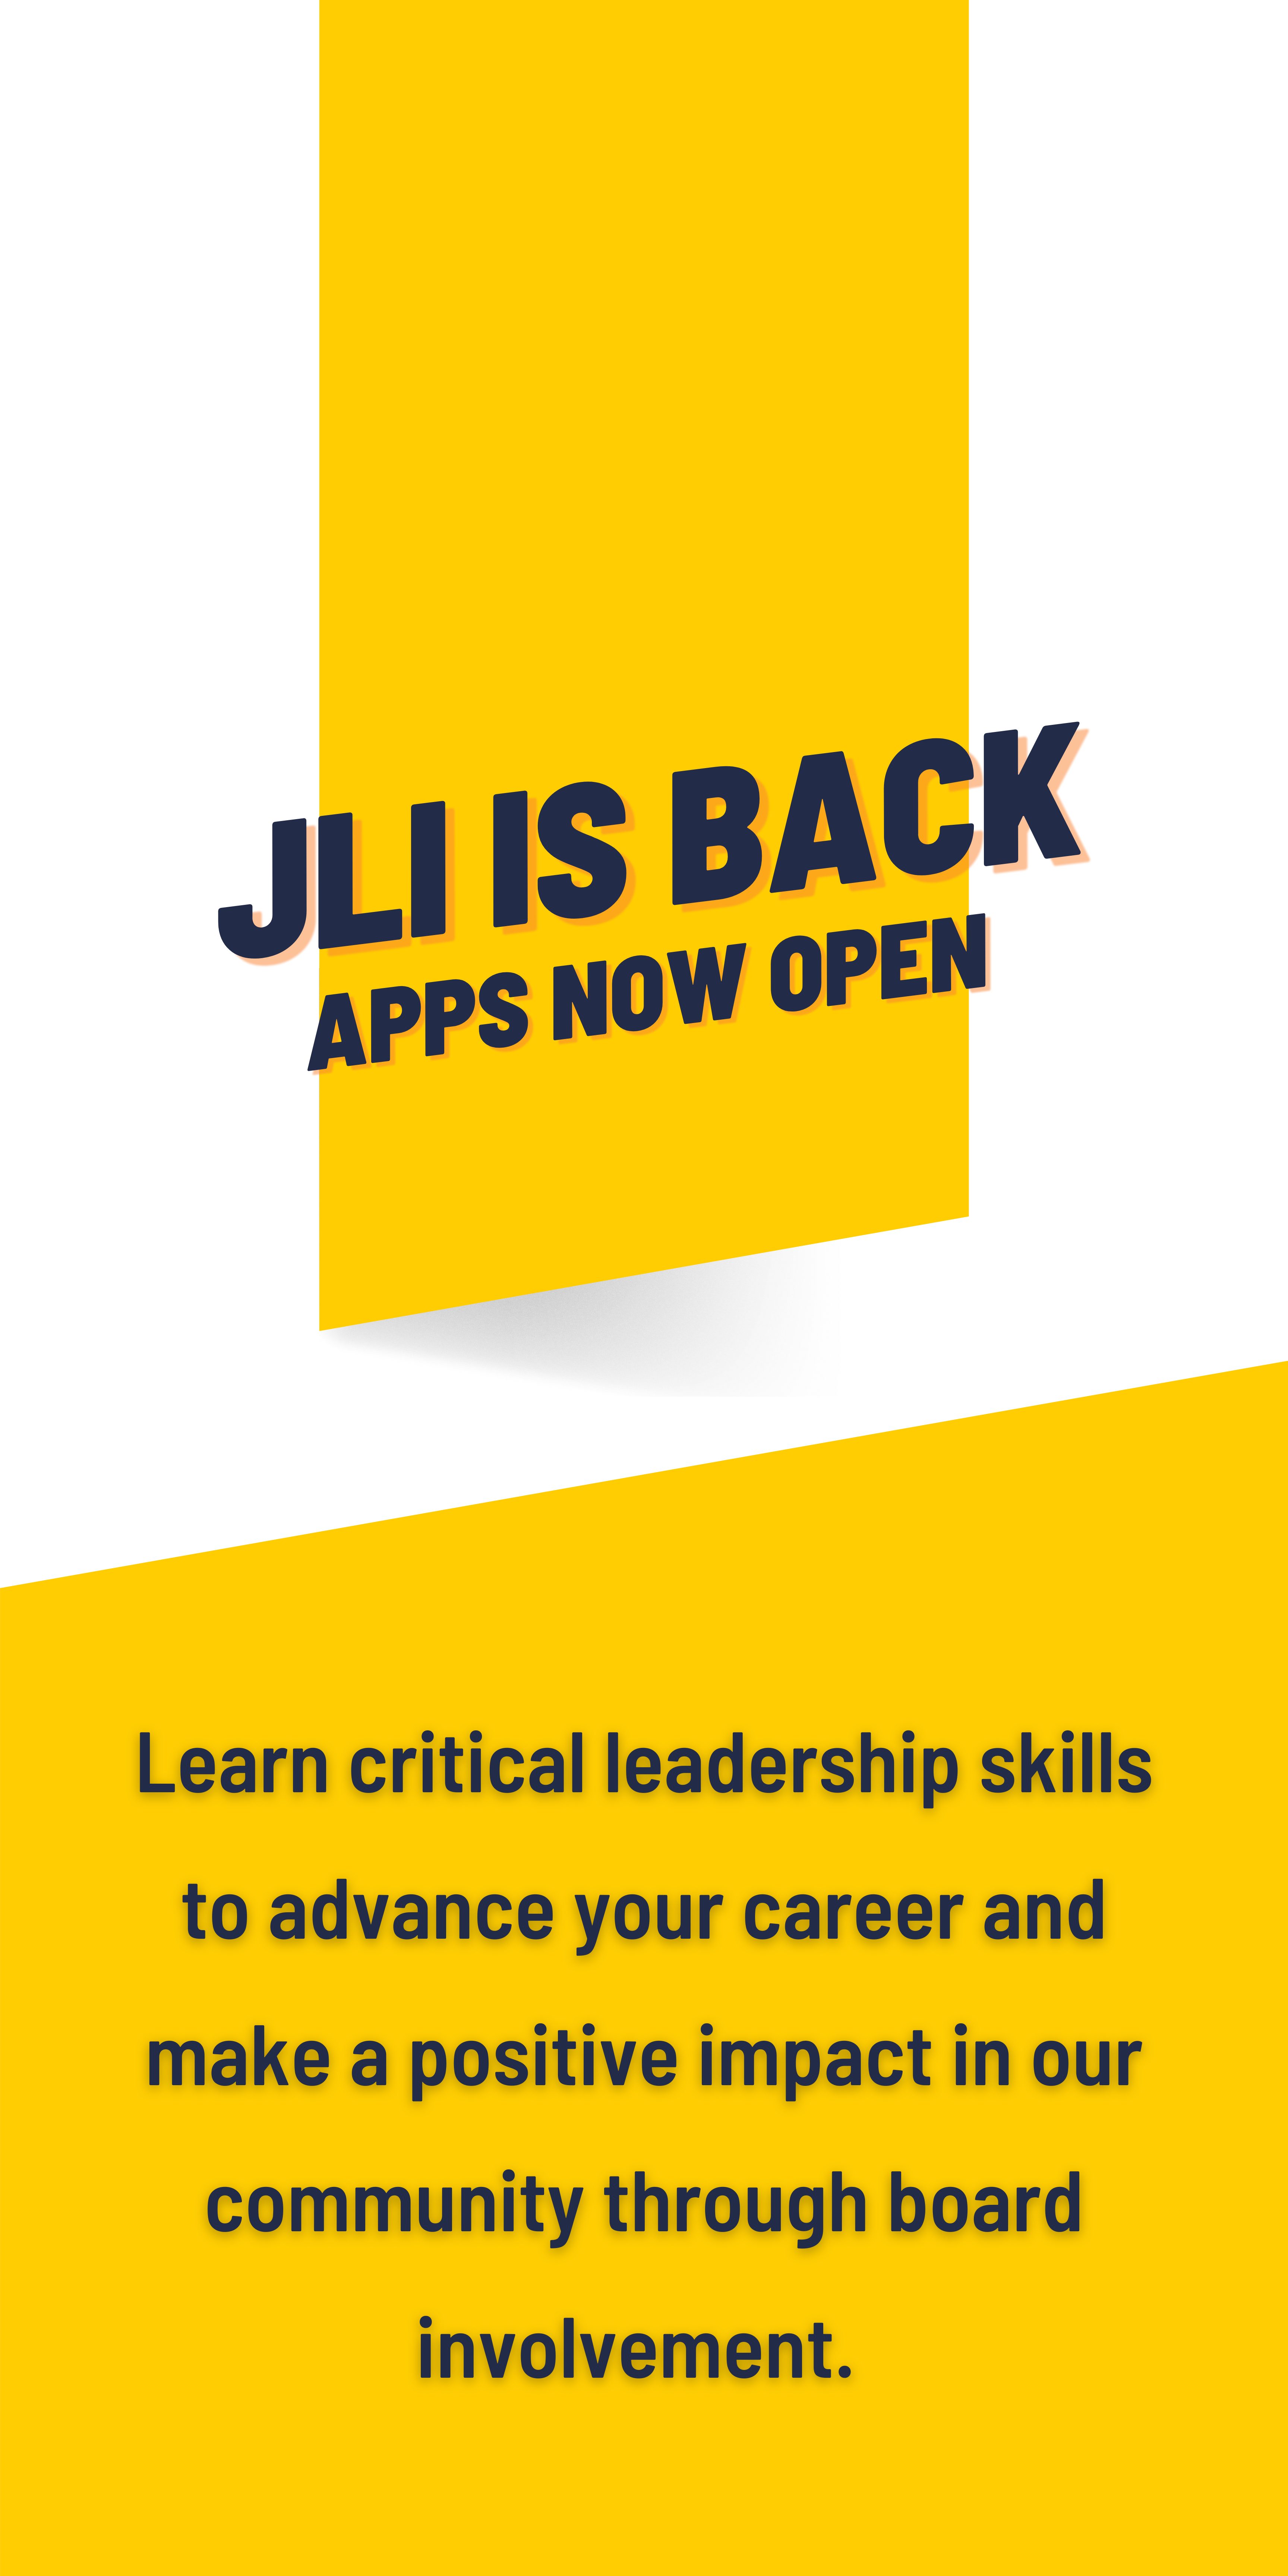 jli is back web banner (36 × 72 in)